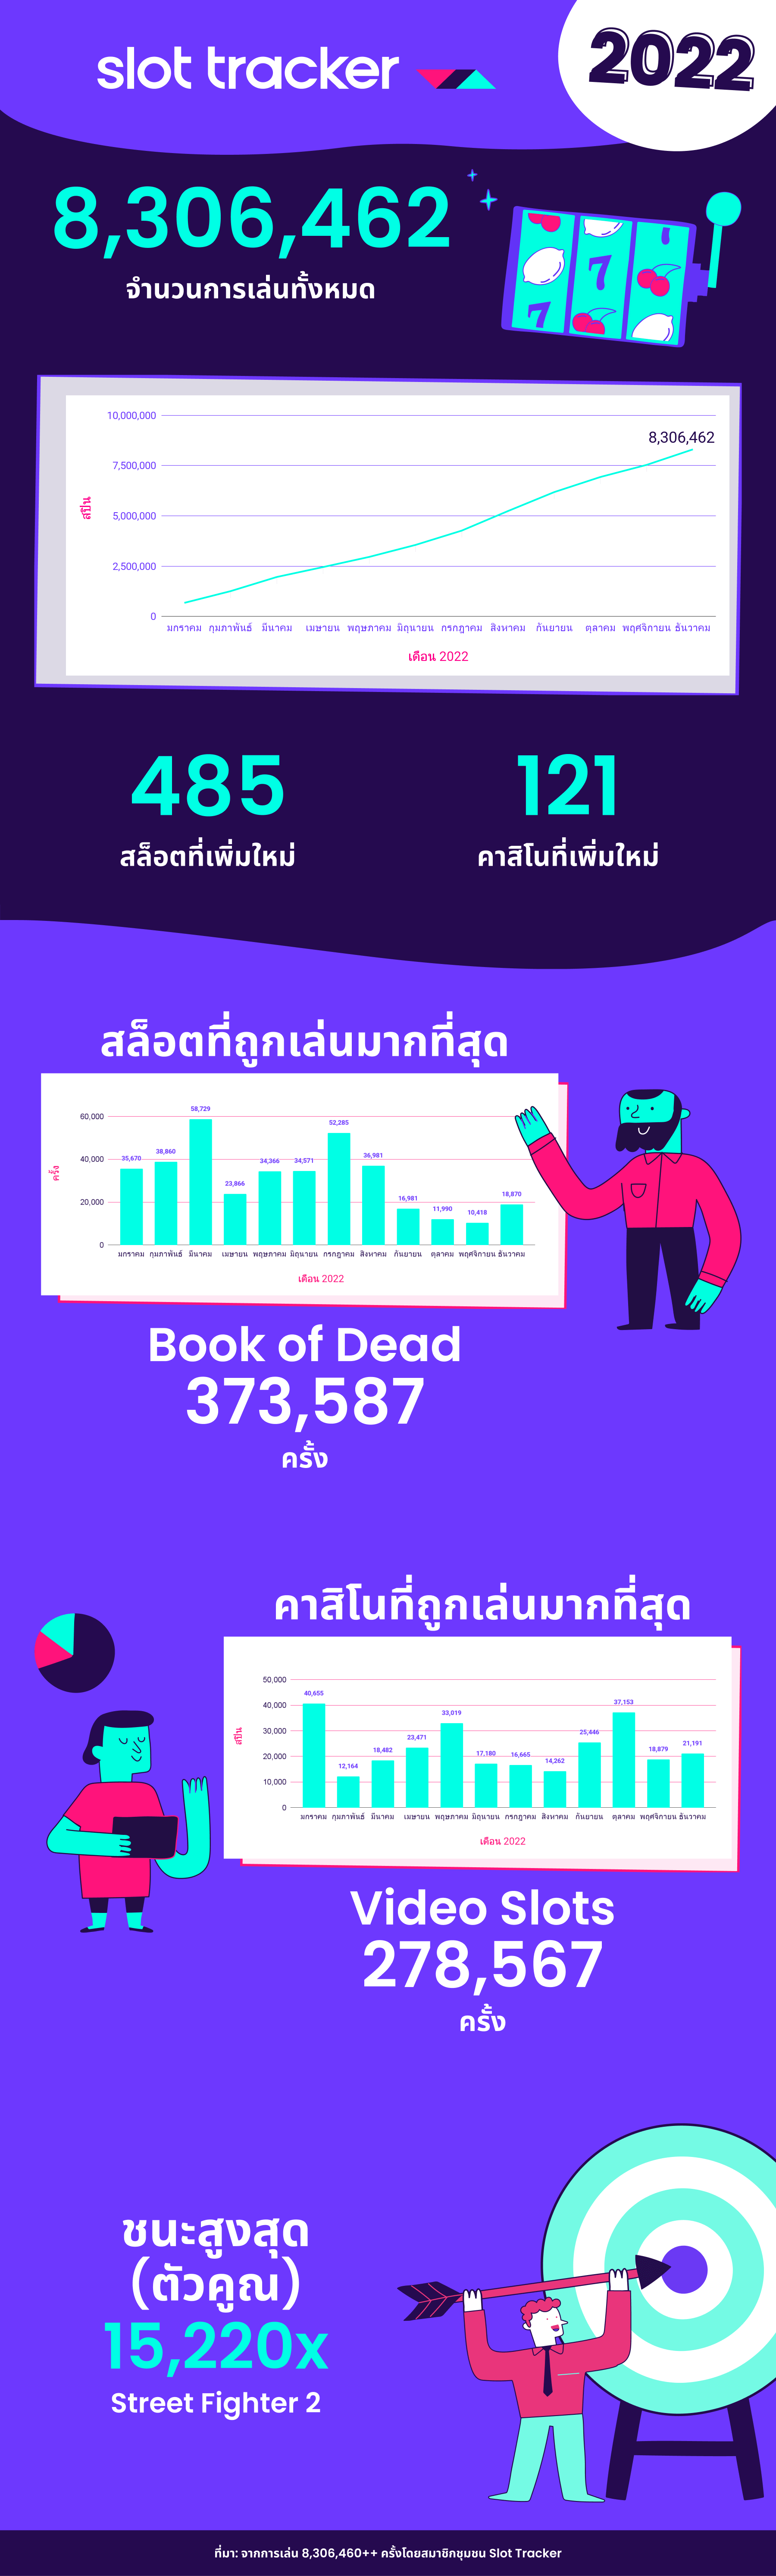 ข้อมูลสถิติของจำนวนการเล่นเกมสล็อตออนไลน์ทั้งหมดในประเทศไทย 2022